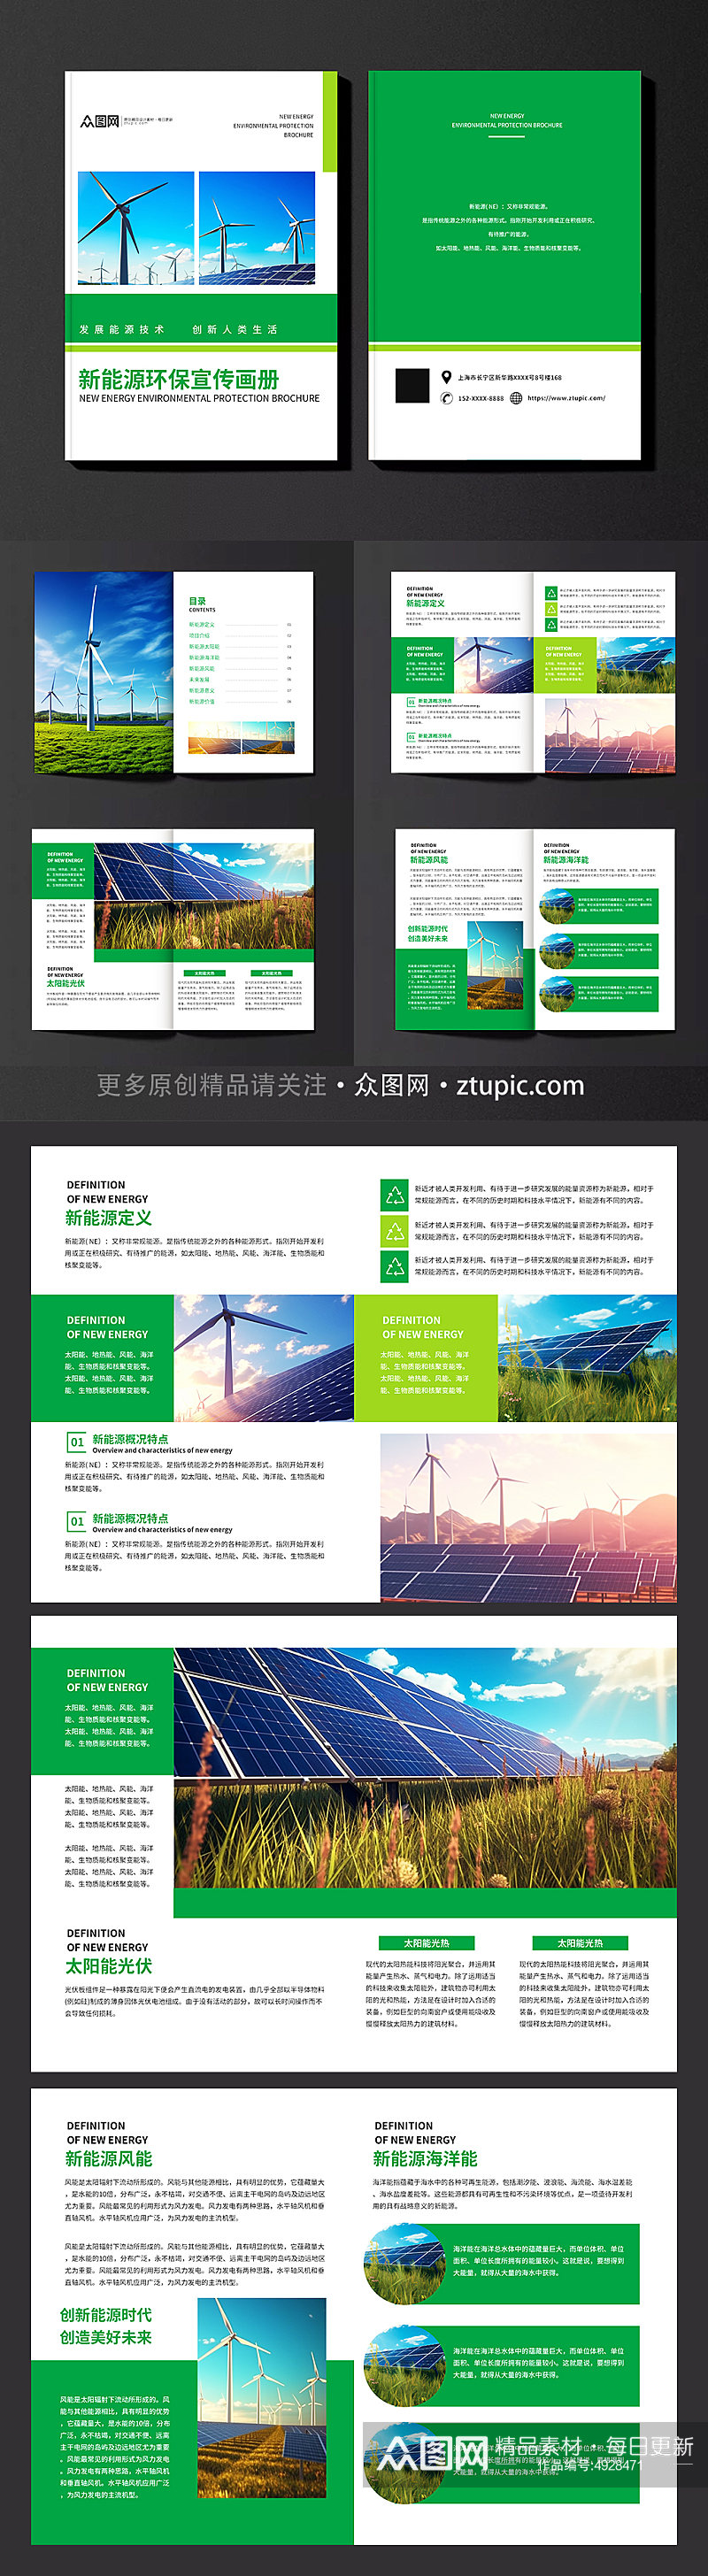 企业新能源环保宣传画册素材